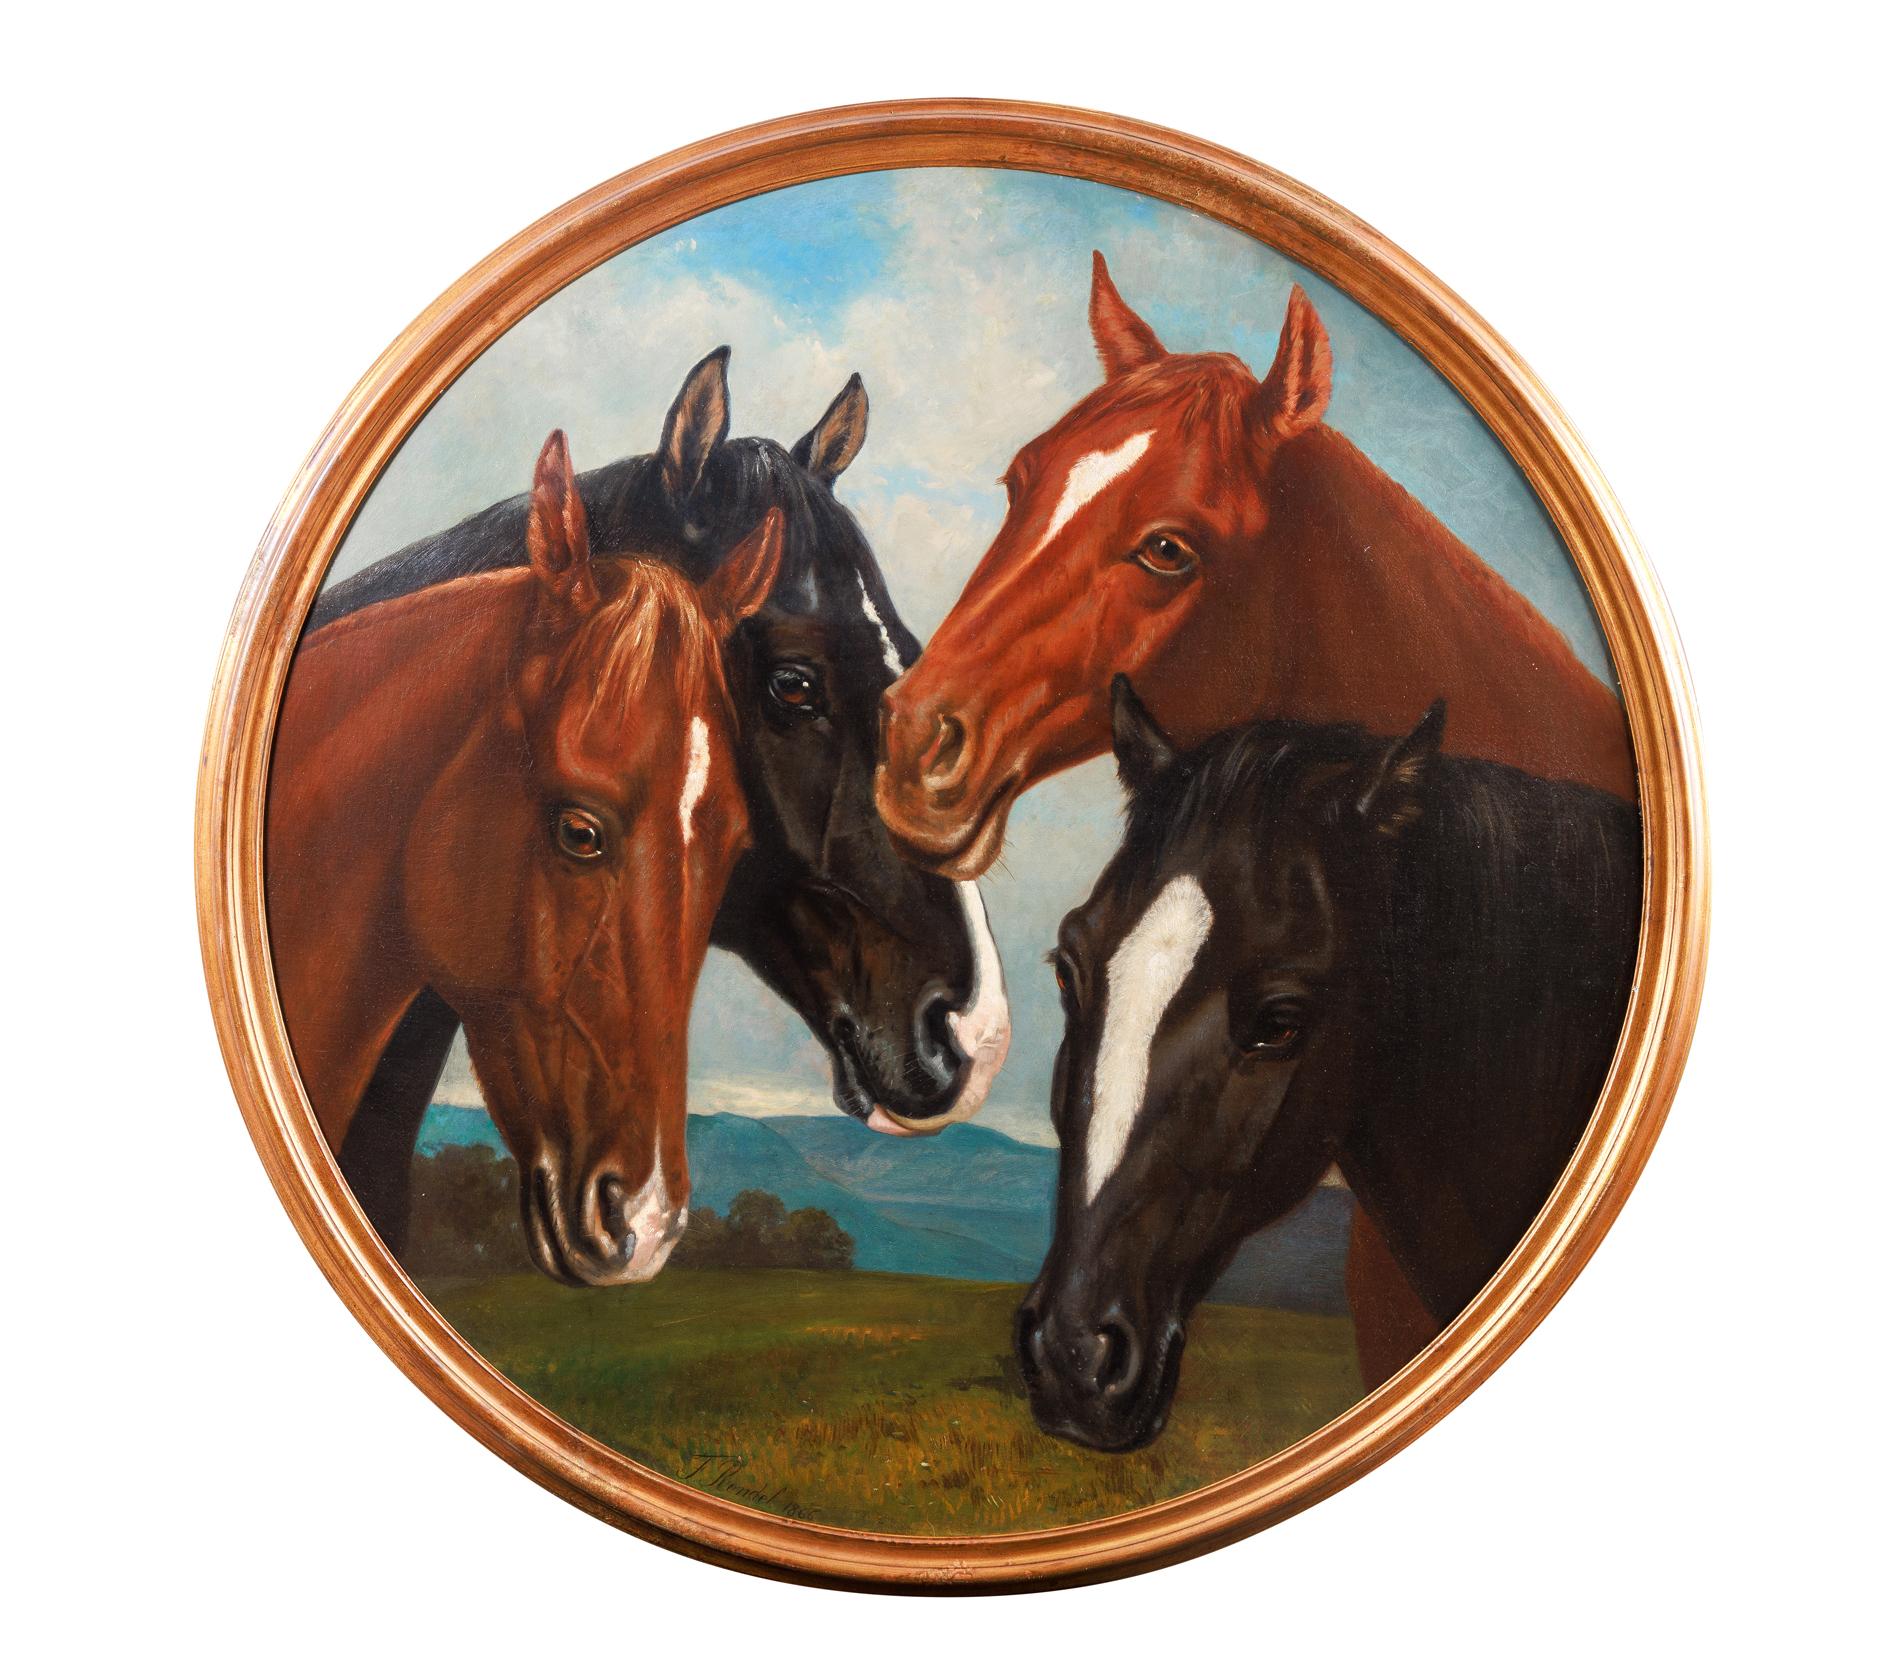 Frederick Rondel (Américain 1826-1892) Une grande et rare peinture de "Quatre chevaux", 1866

Une magnifique et rare peinture ovale de chevaux, huile sur panneau, mesurant 52" de diamètre, avec une qualité exceptionnelle des détails des chevaux et